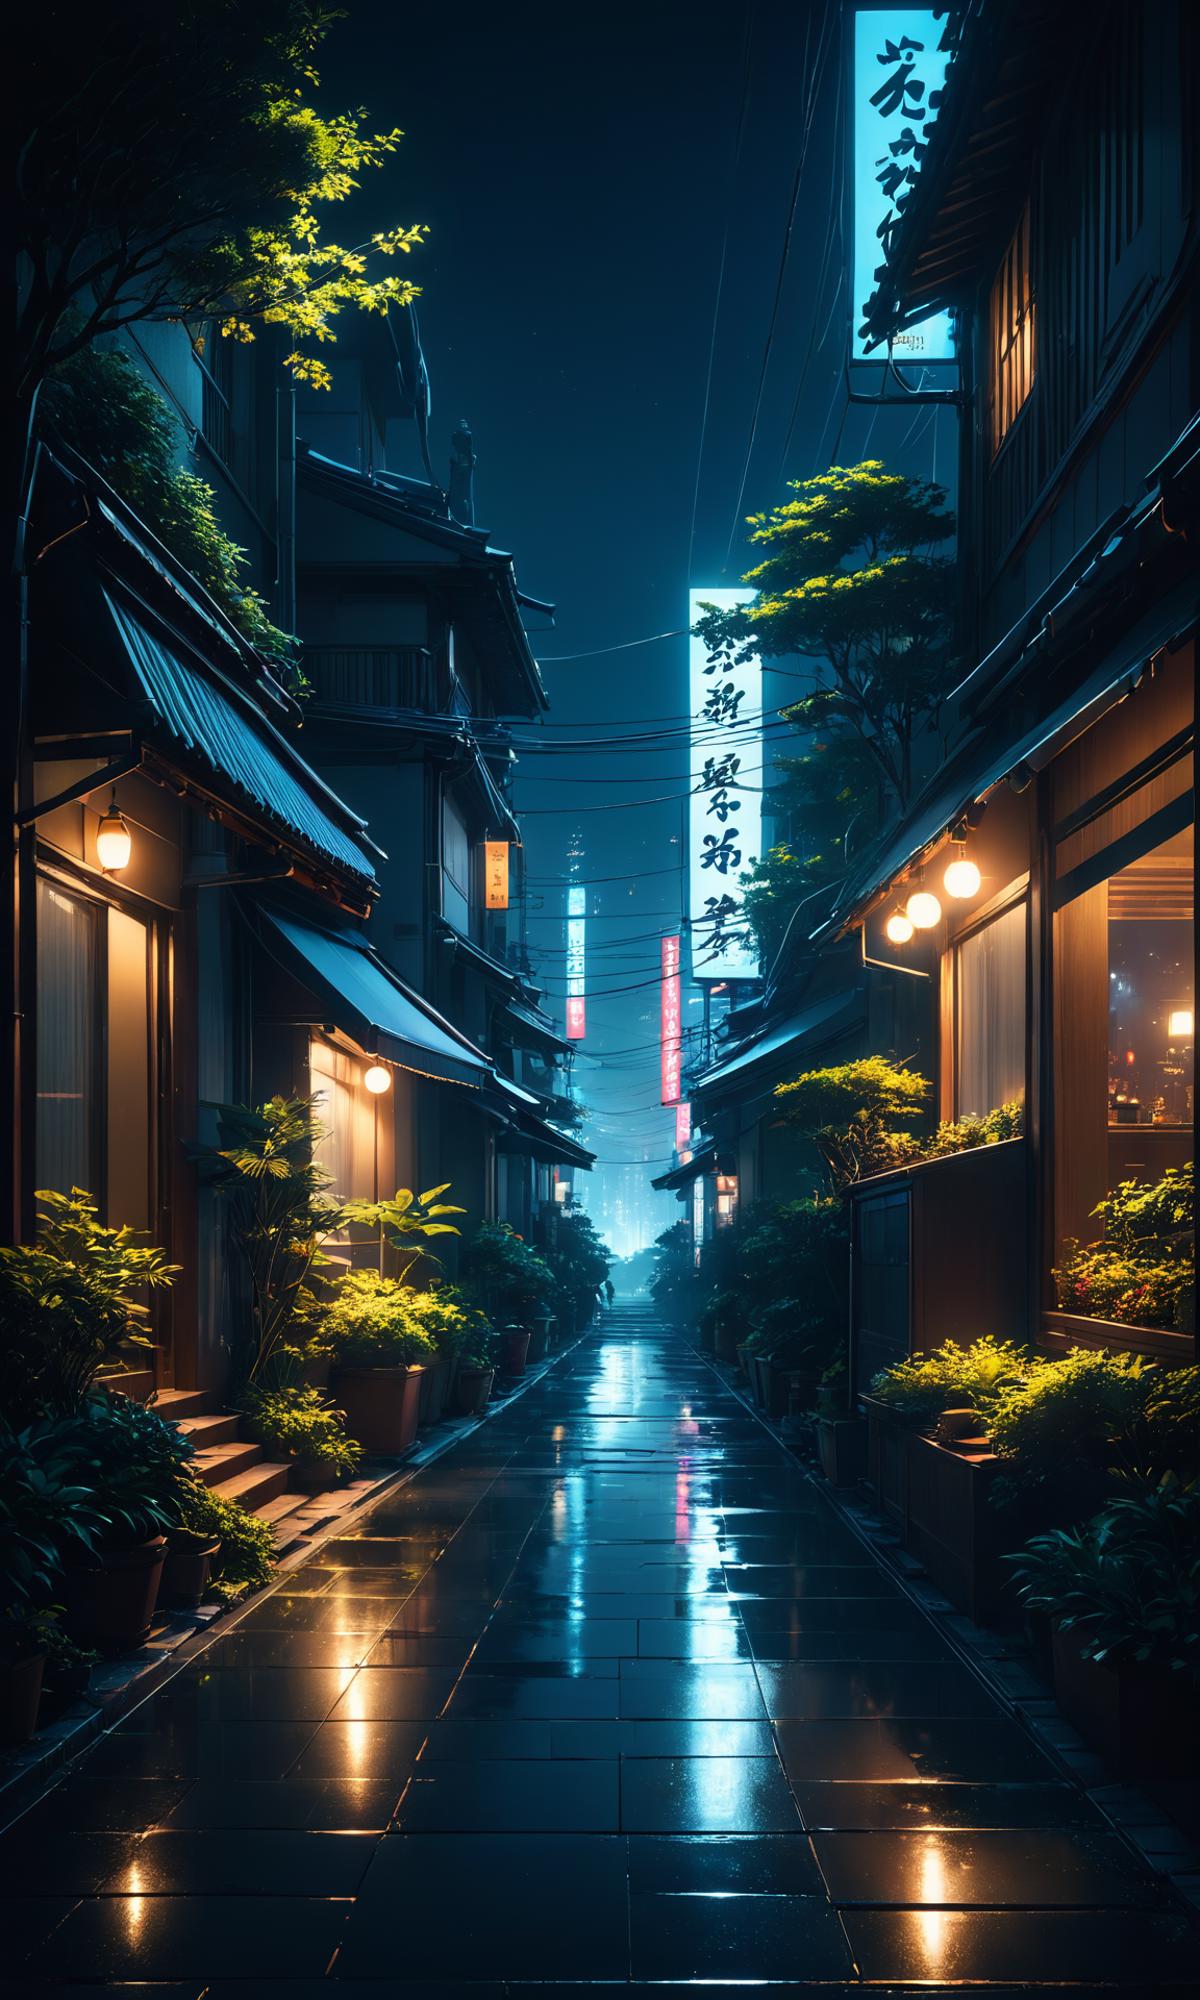 A Nighttime Walk Down An Alleyway Between Buildings